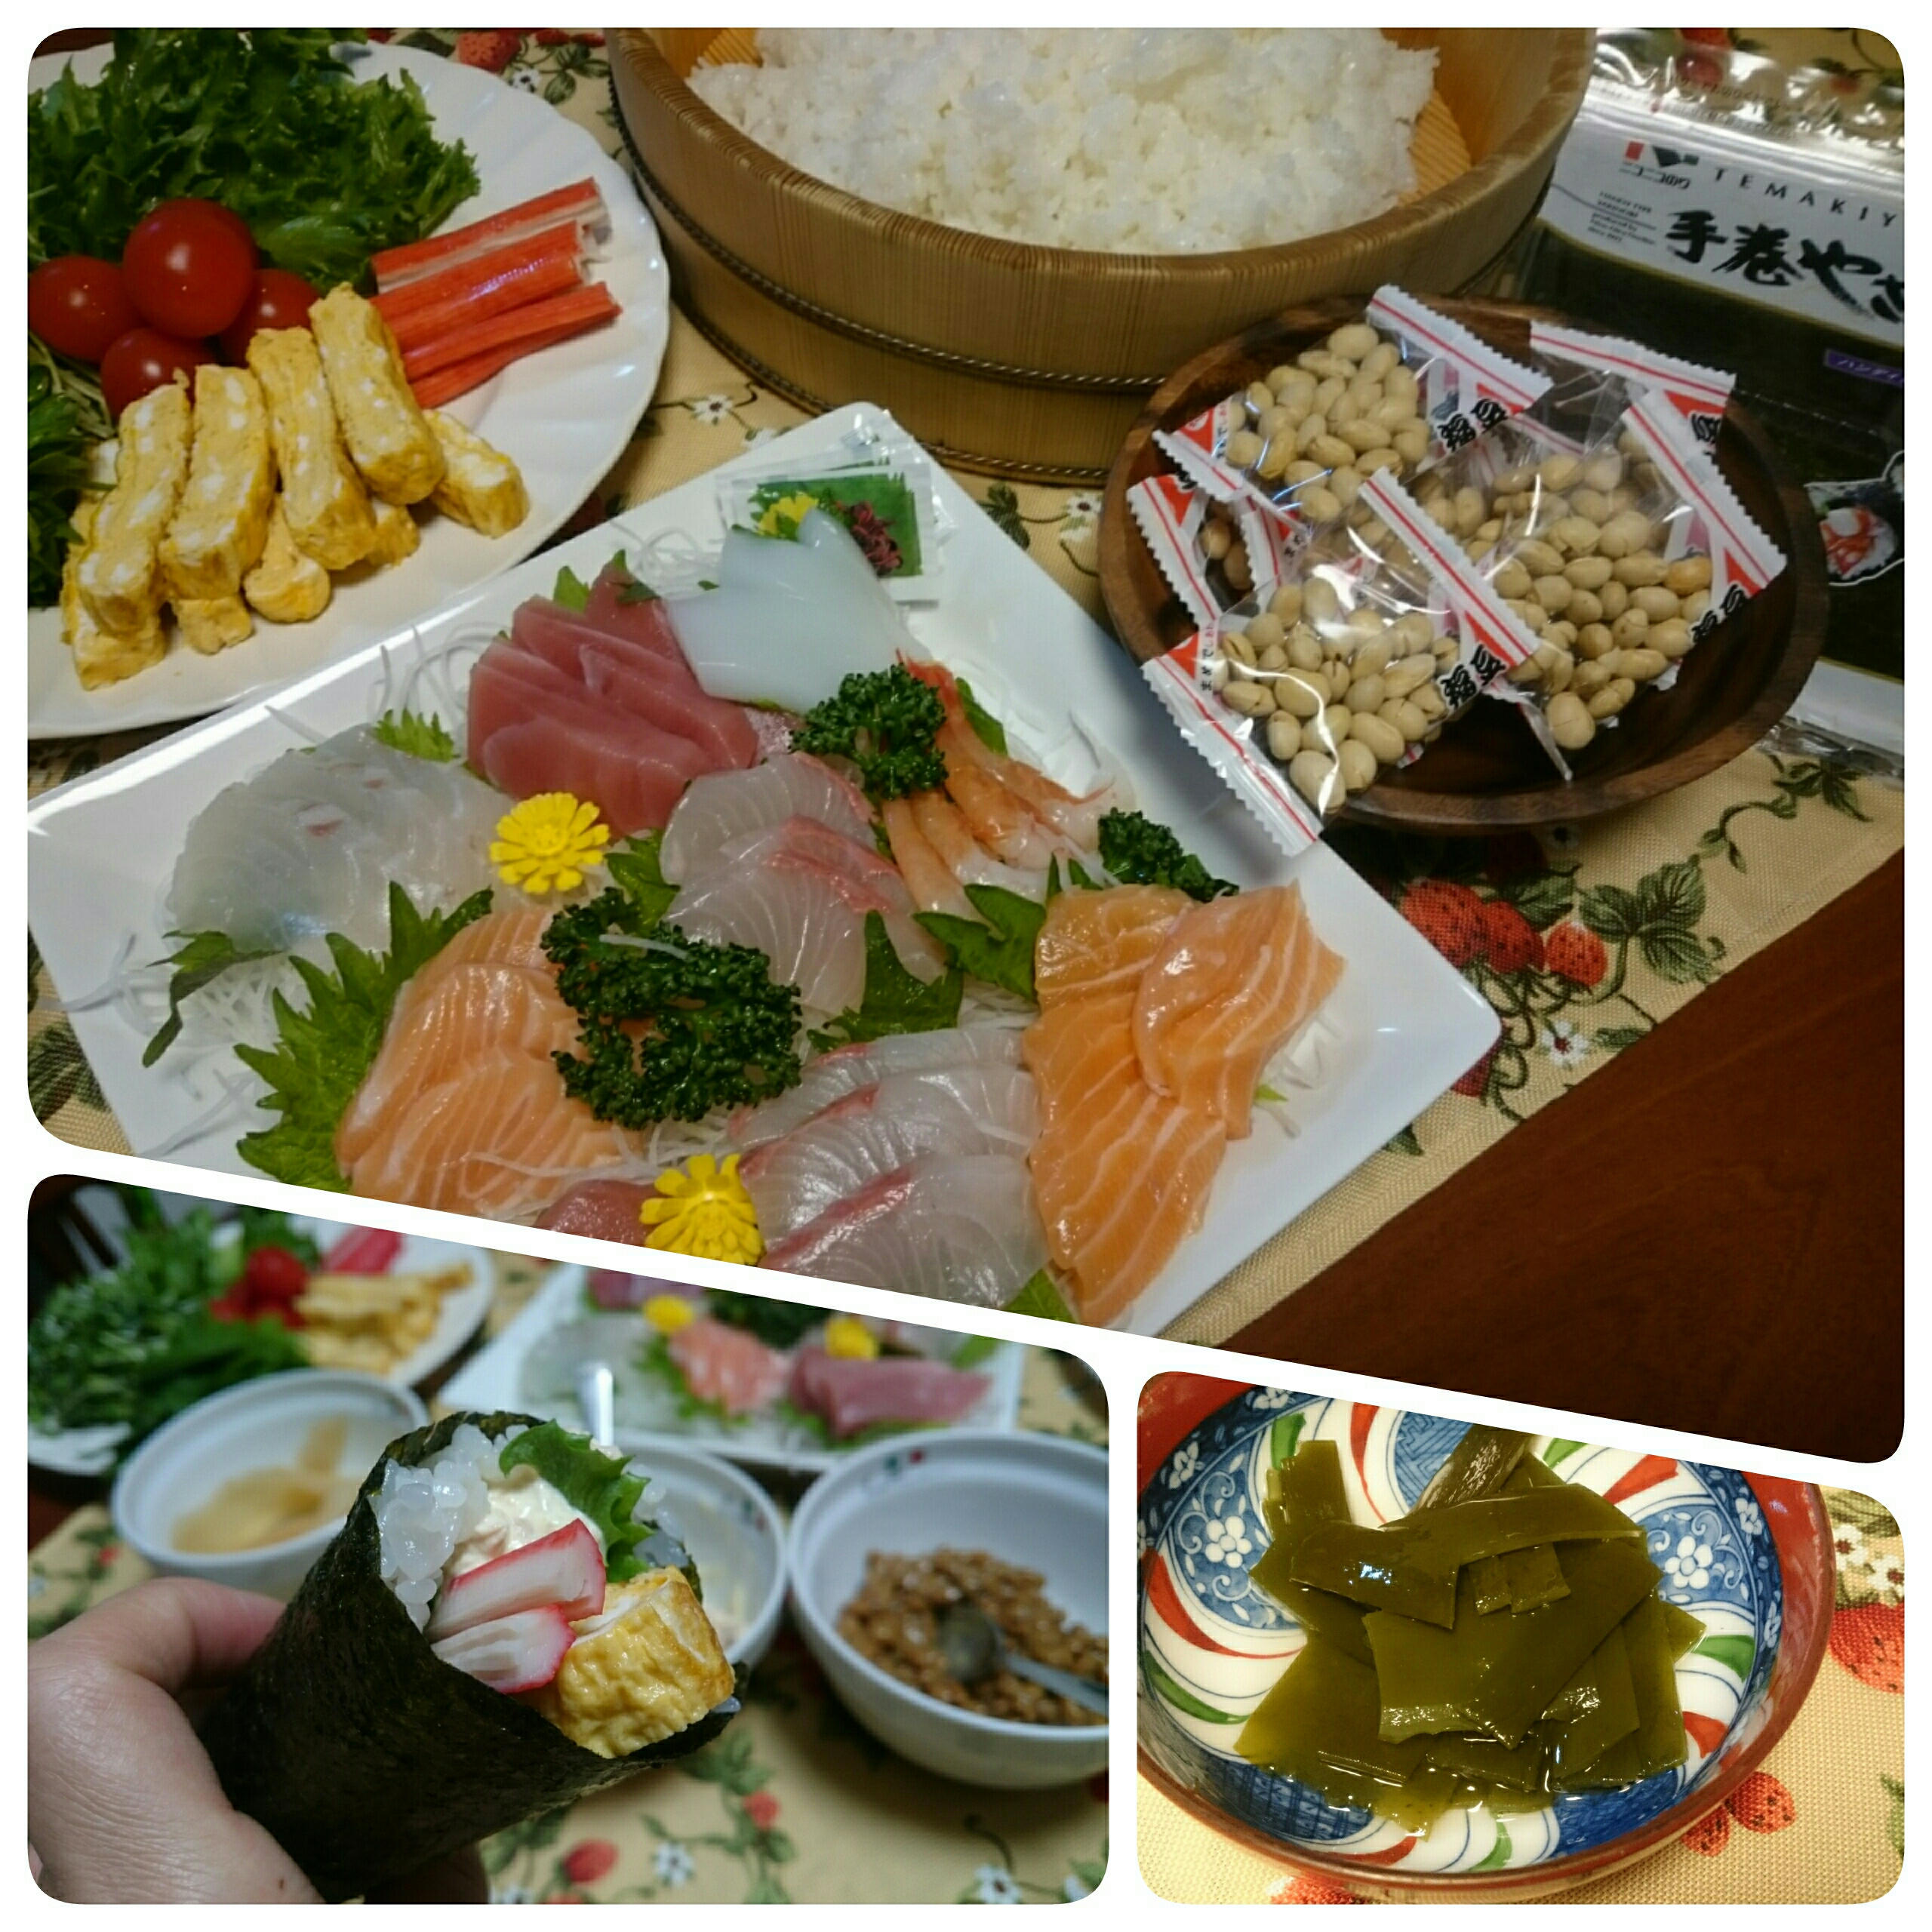 ☆今日の晩ごはん☆  手巻き寿司  (ご飯を炊いた時のこぶを酢こぶに。)